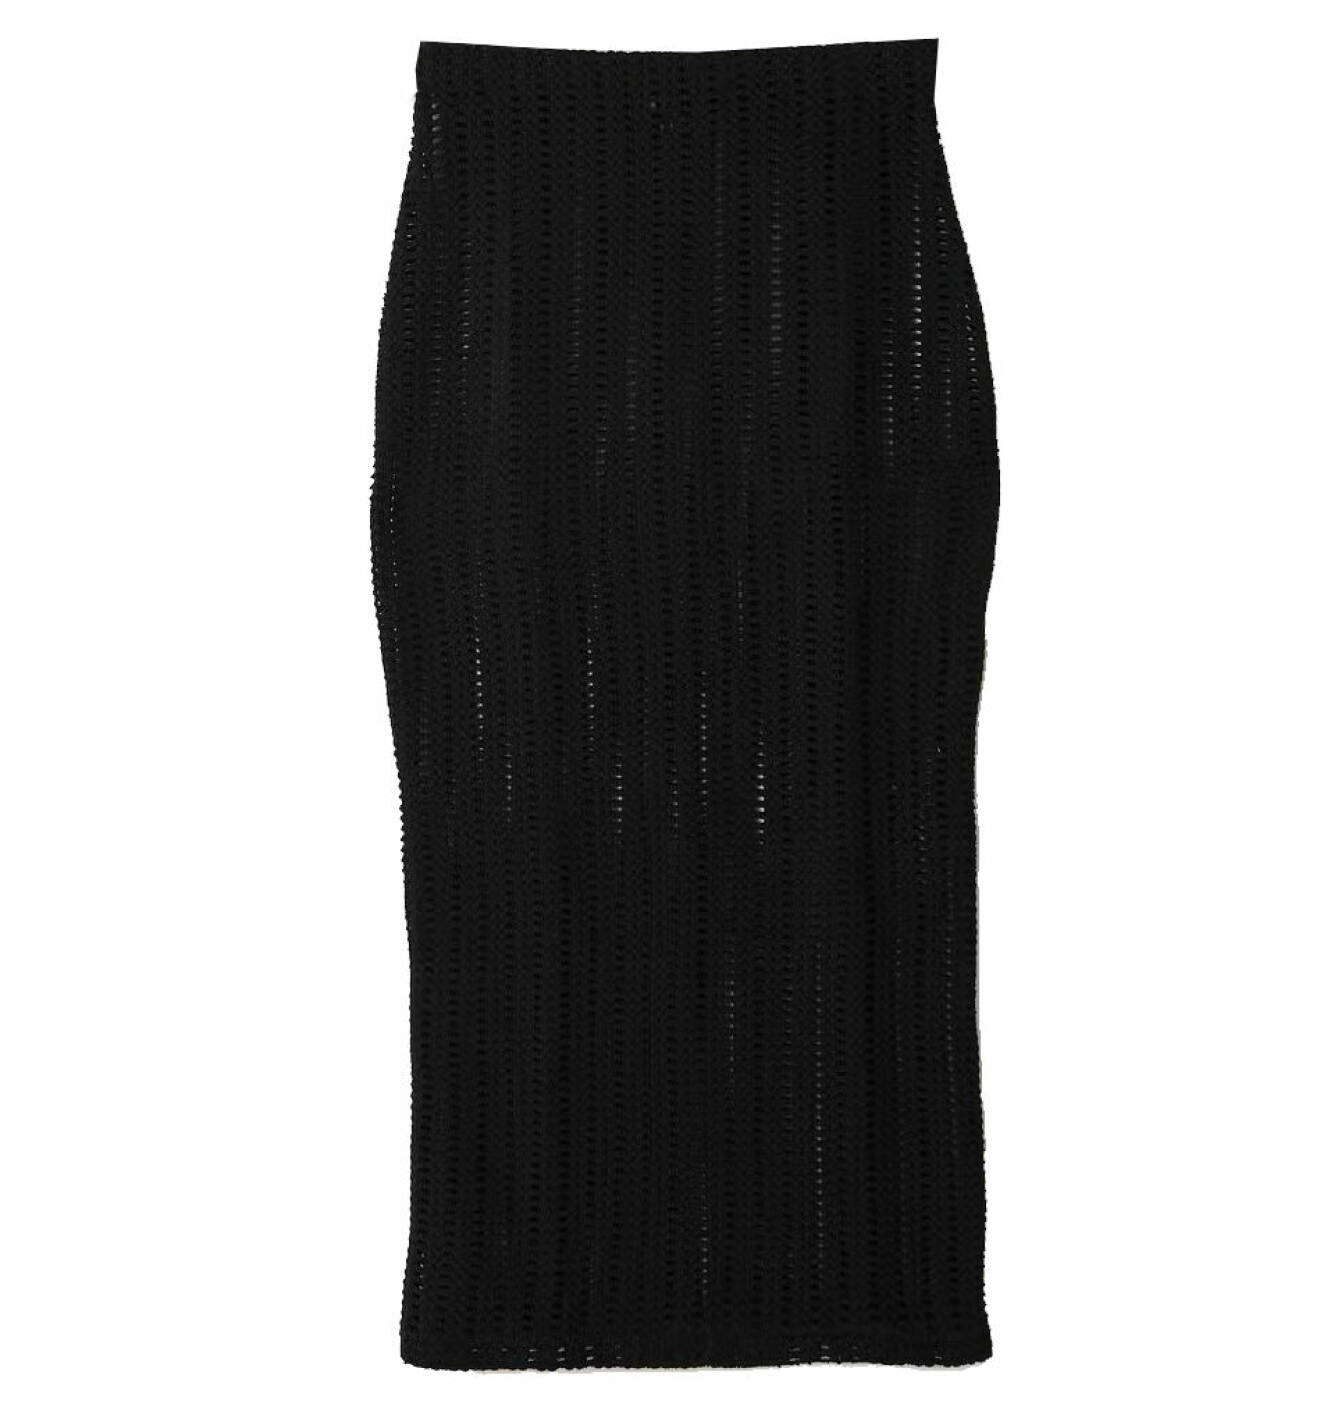 modenyheter dam sommar 2022 virkad kjol svart